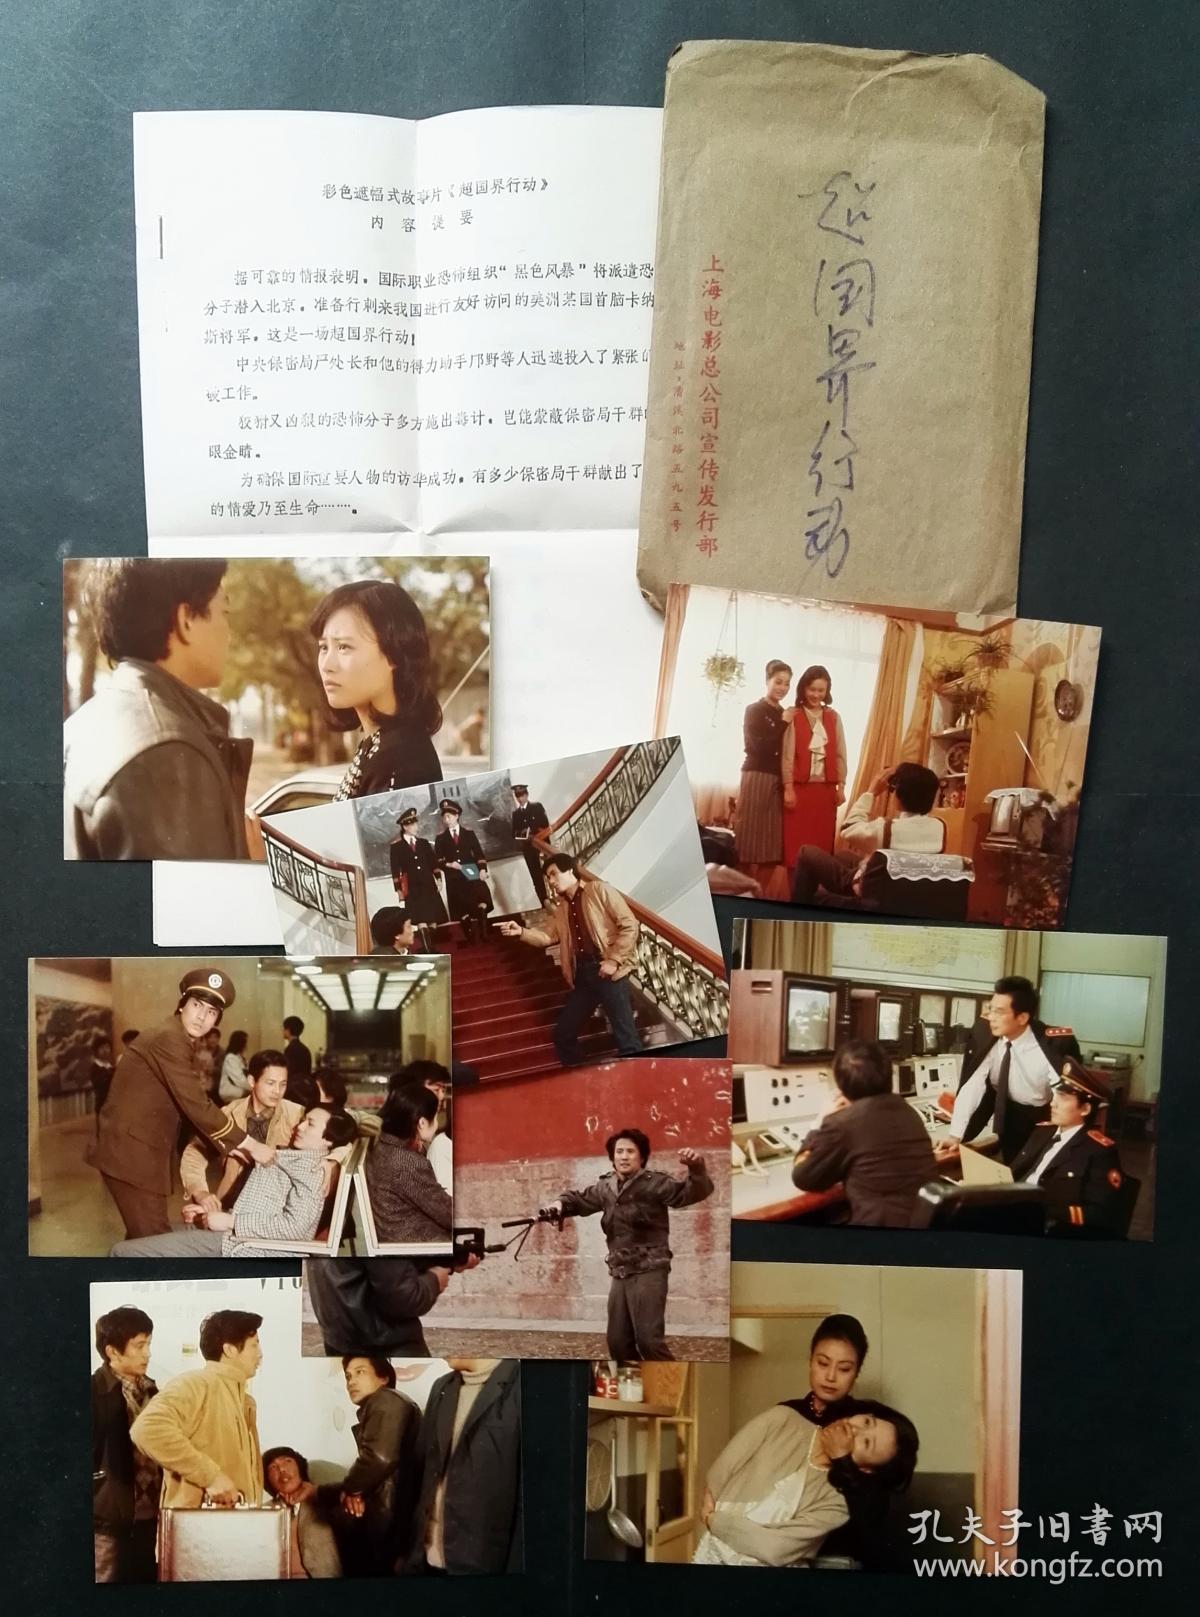 1986年《超国界行动》邬君梅等主演剧照8张,号称中国第一部反恐影片